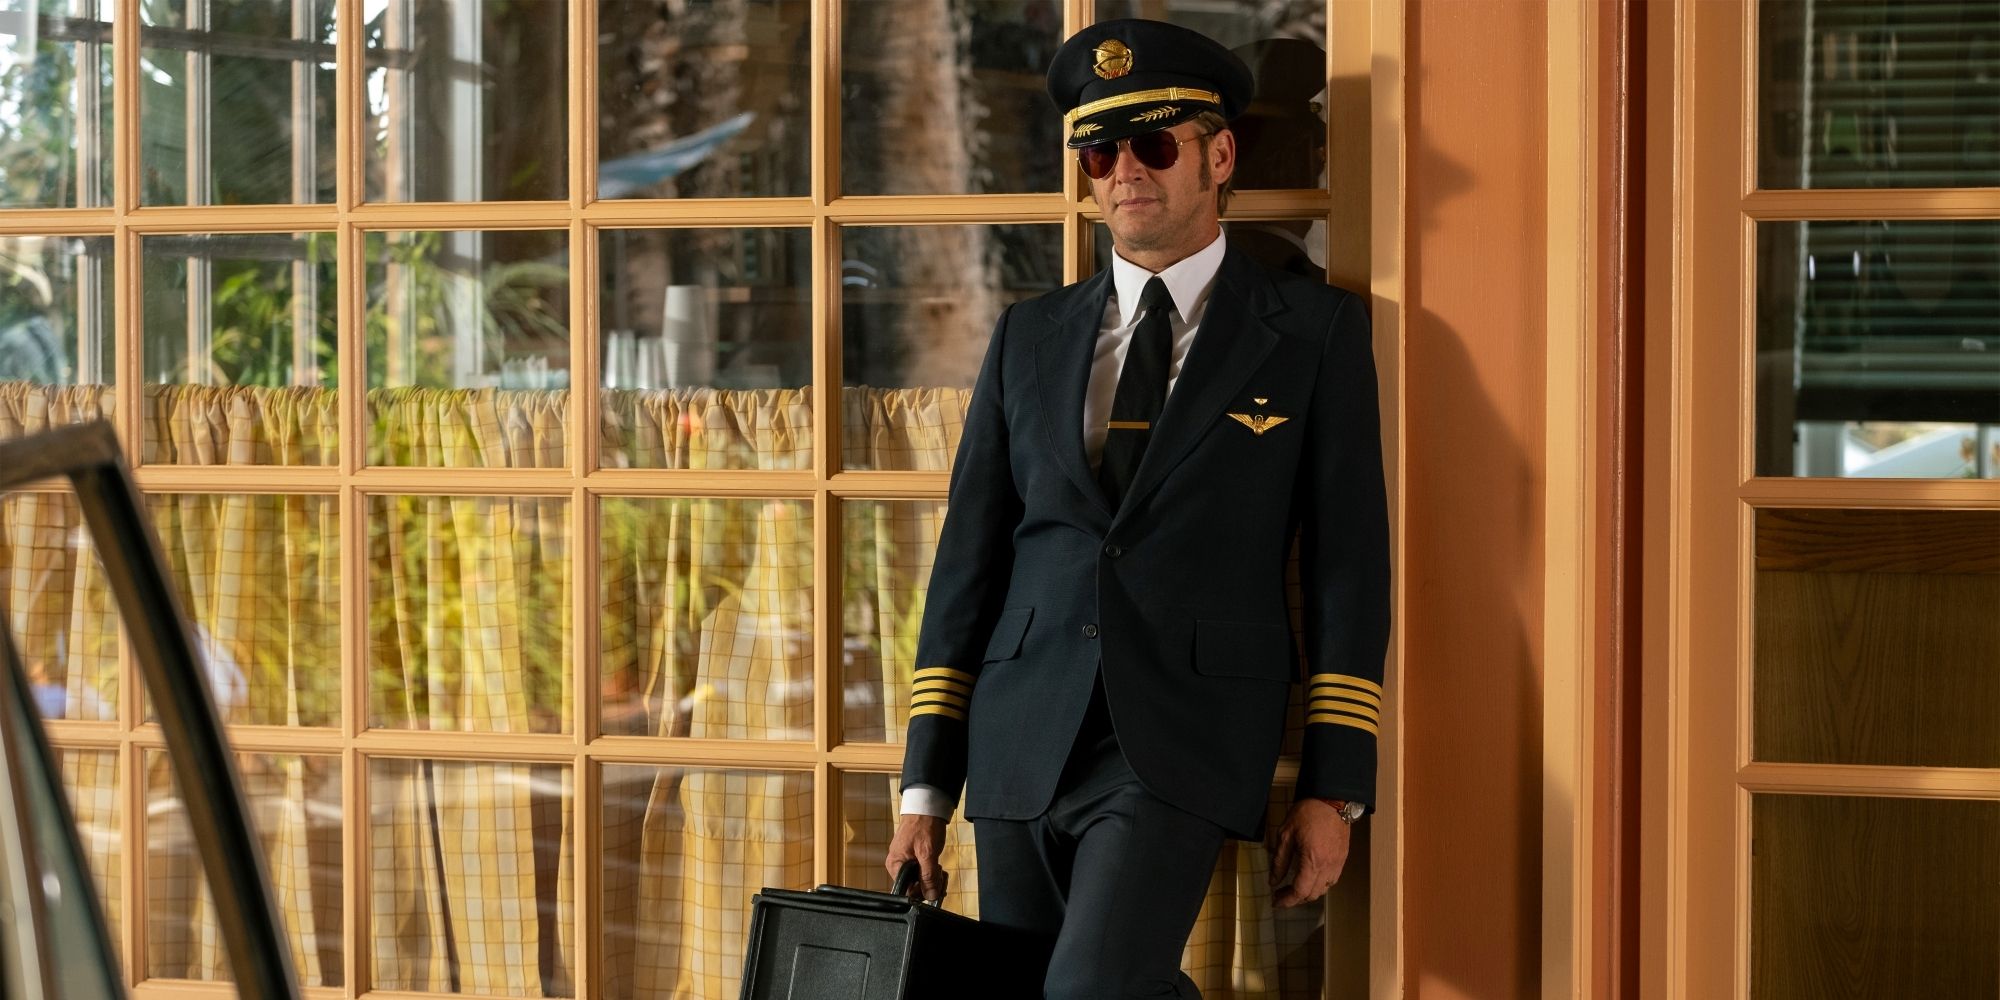 Josh Lucas As Douglas Dougie Dellacorte Simmons In His Pilot Uniform In Palm Royale.jpg